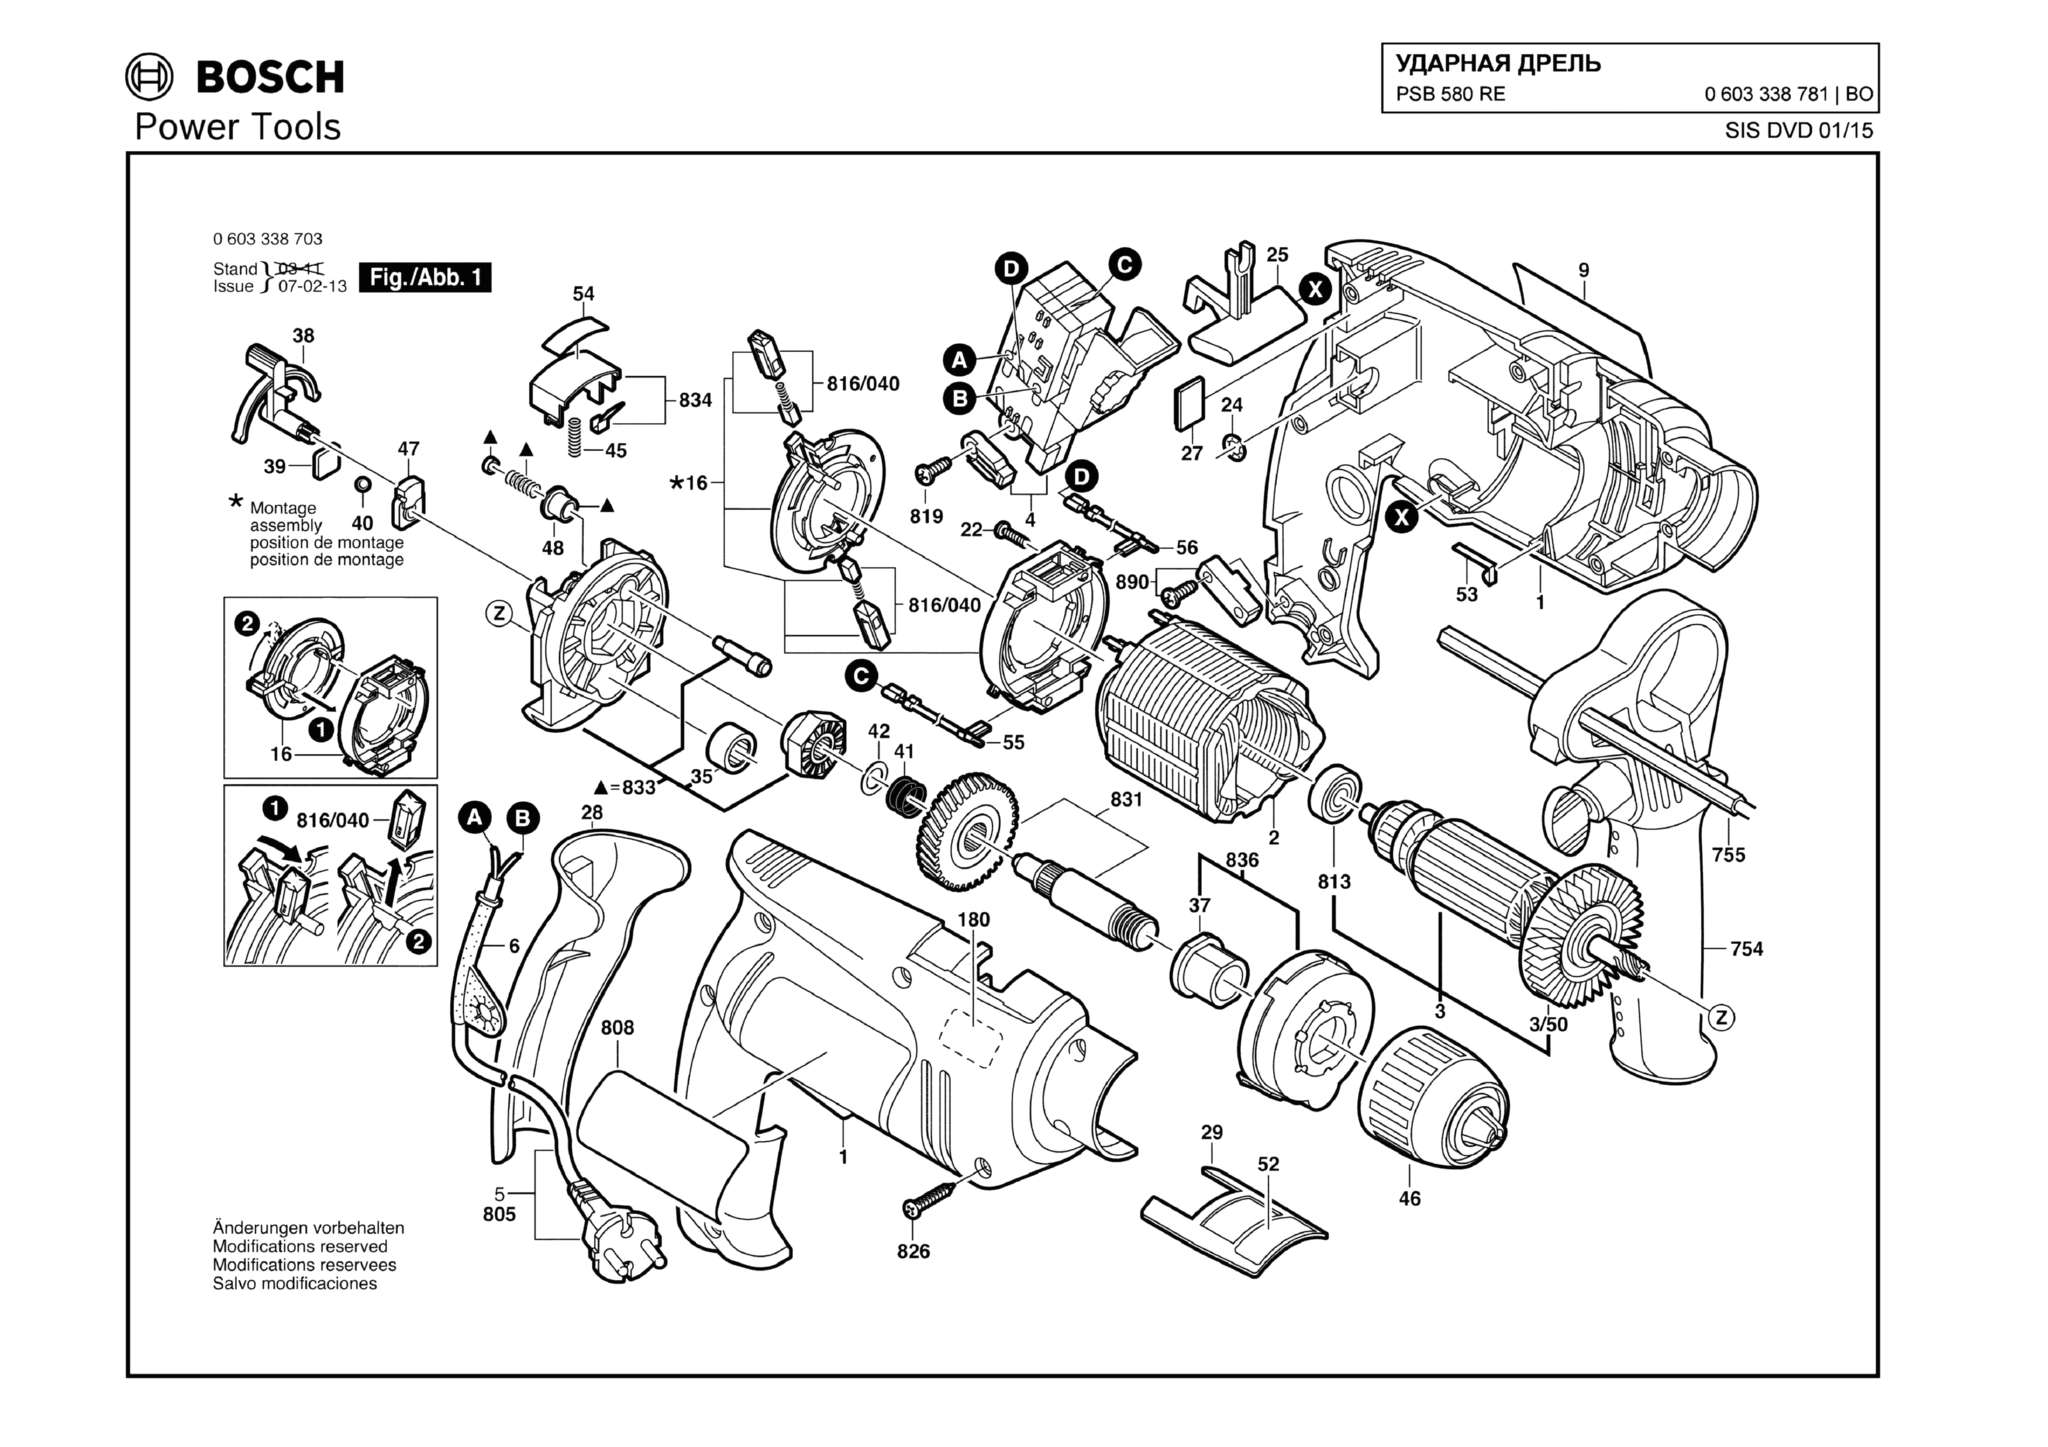 Запчасти, схема и деталировка Bosch PSB 580 RE (ТИП 0603338781)